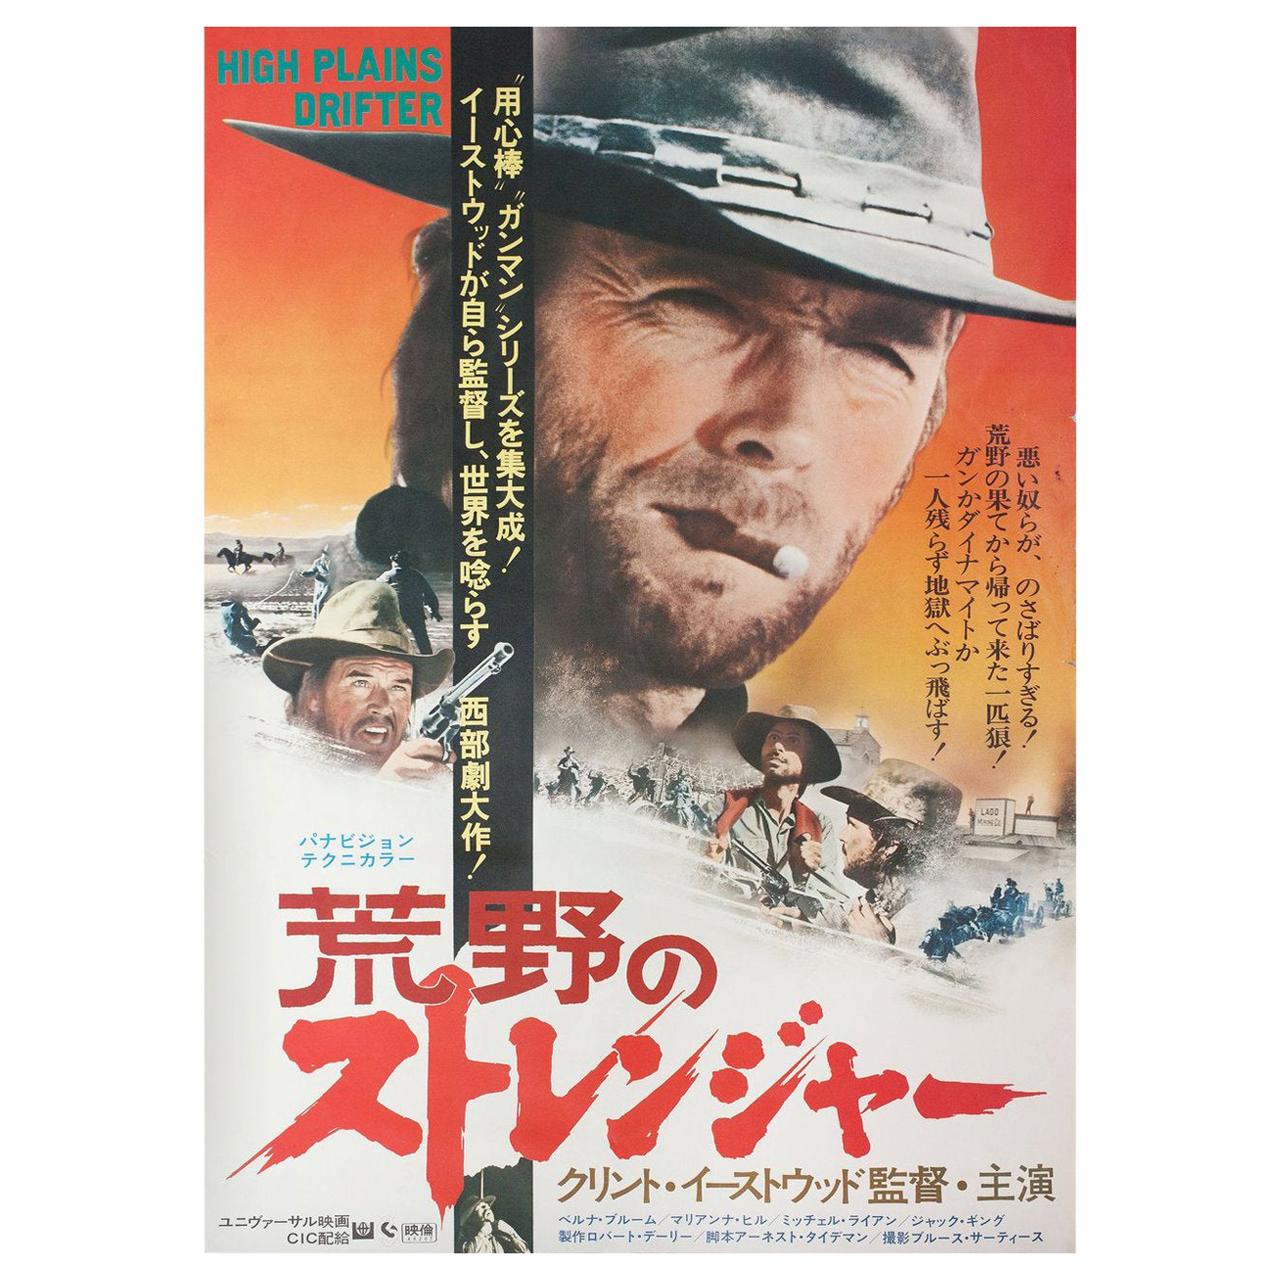 High Plains Drifter 1973 Japanese B3 Film Poster